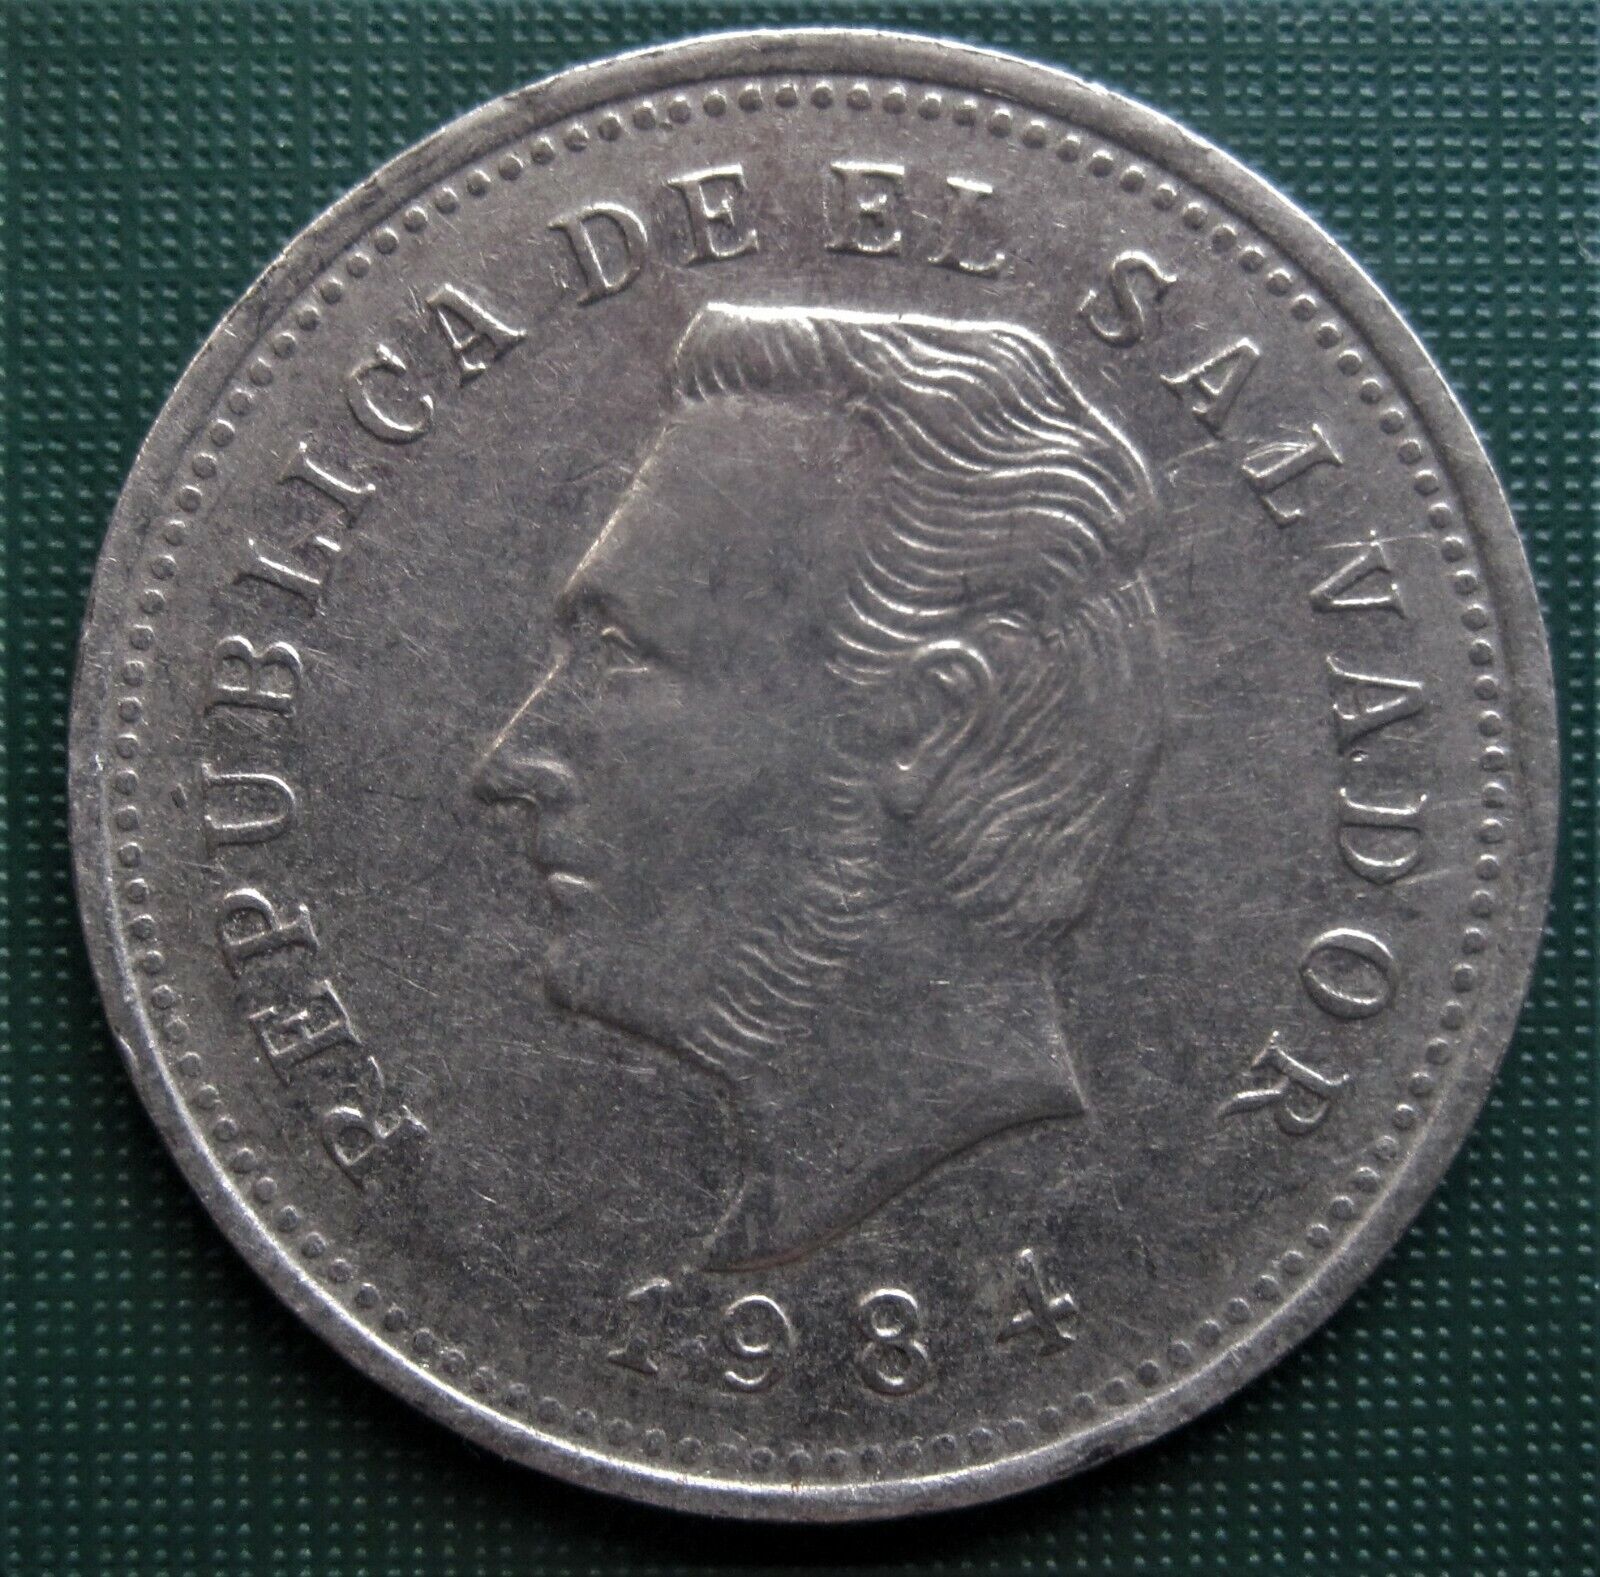 El Salvador 1984 Five Centavo 5 Cent Coin Low Ship X